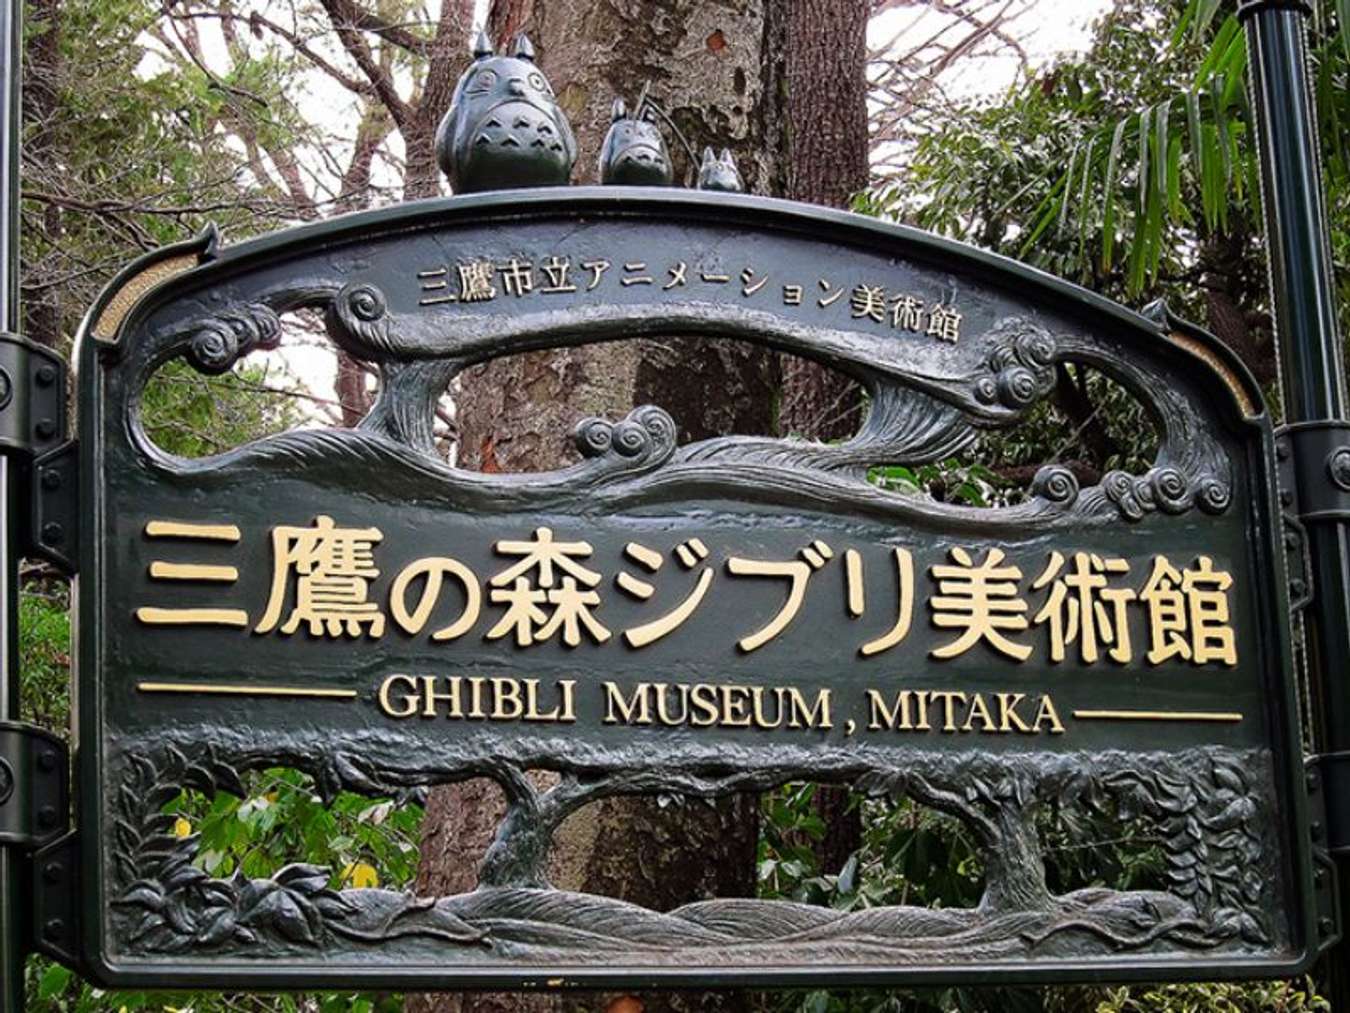 Bảo tàng Ghibli: Kinh nghiệm tham quan và vui chơi thỏa thích